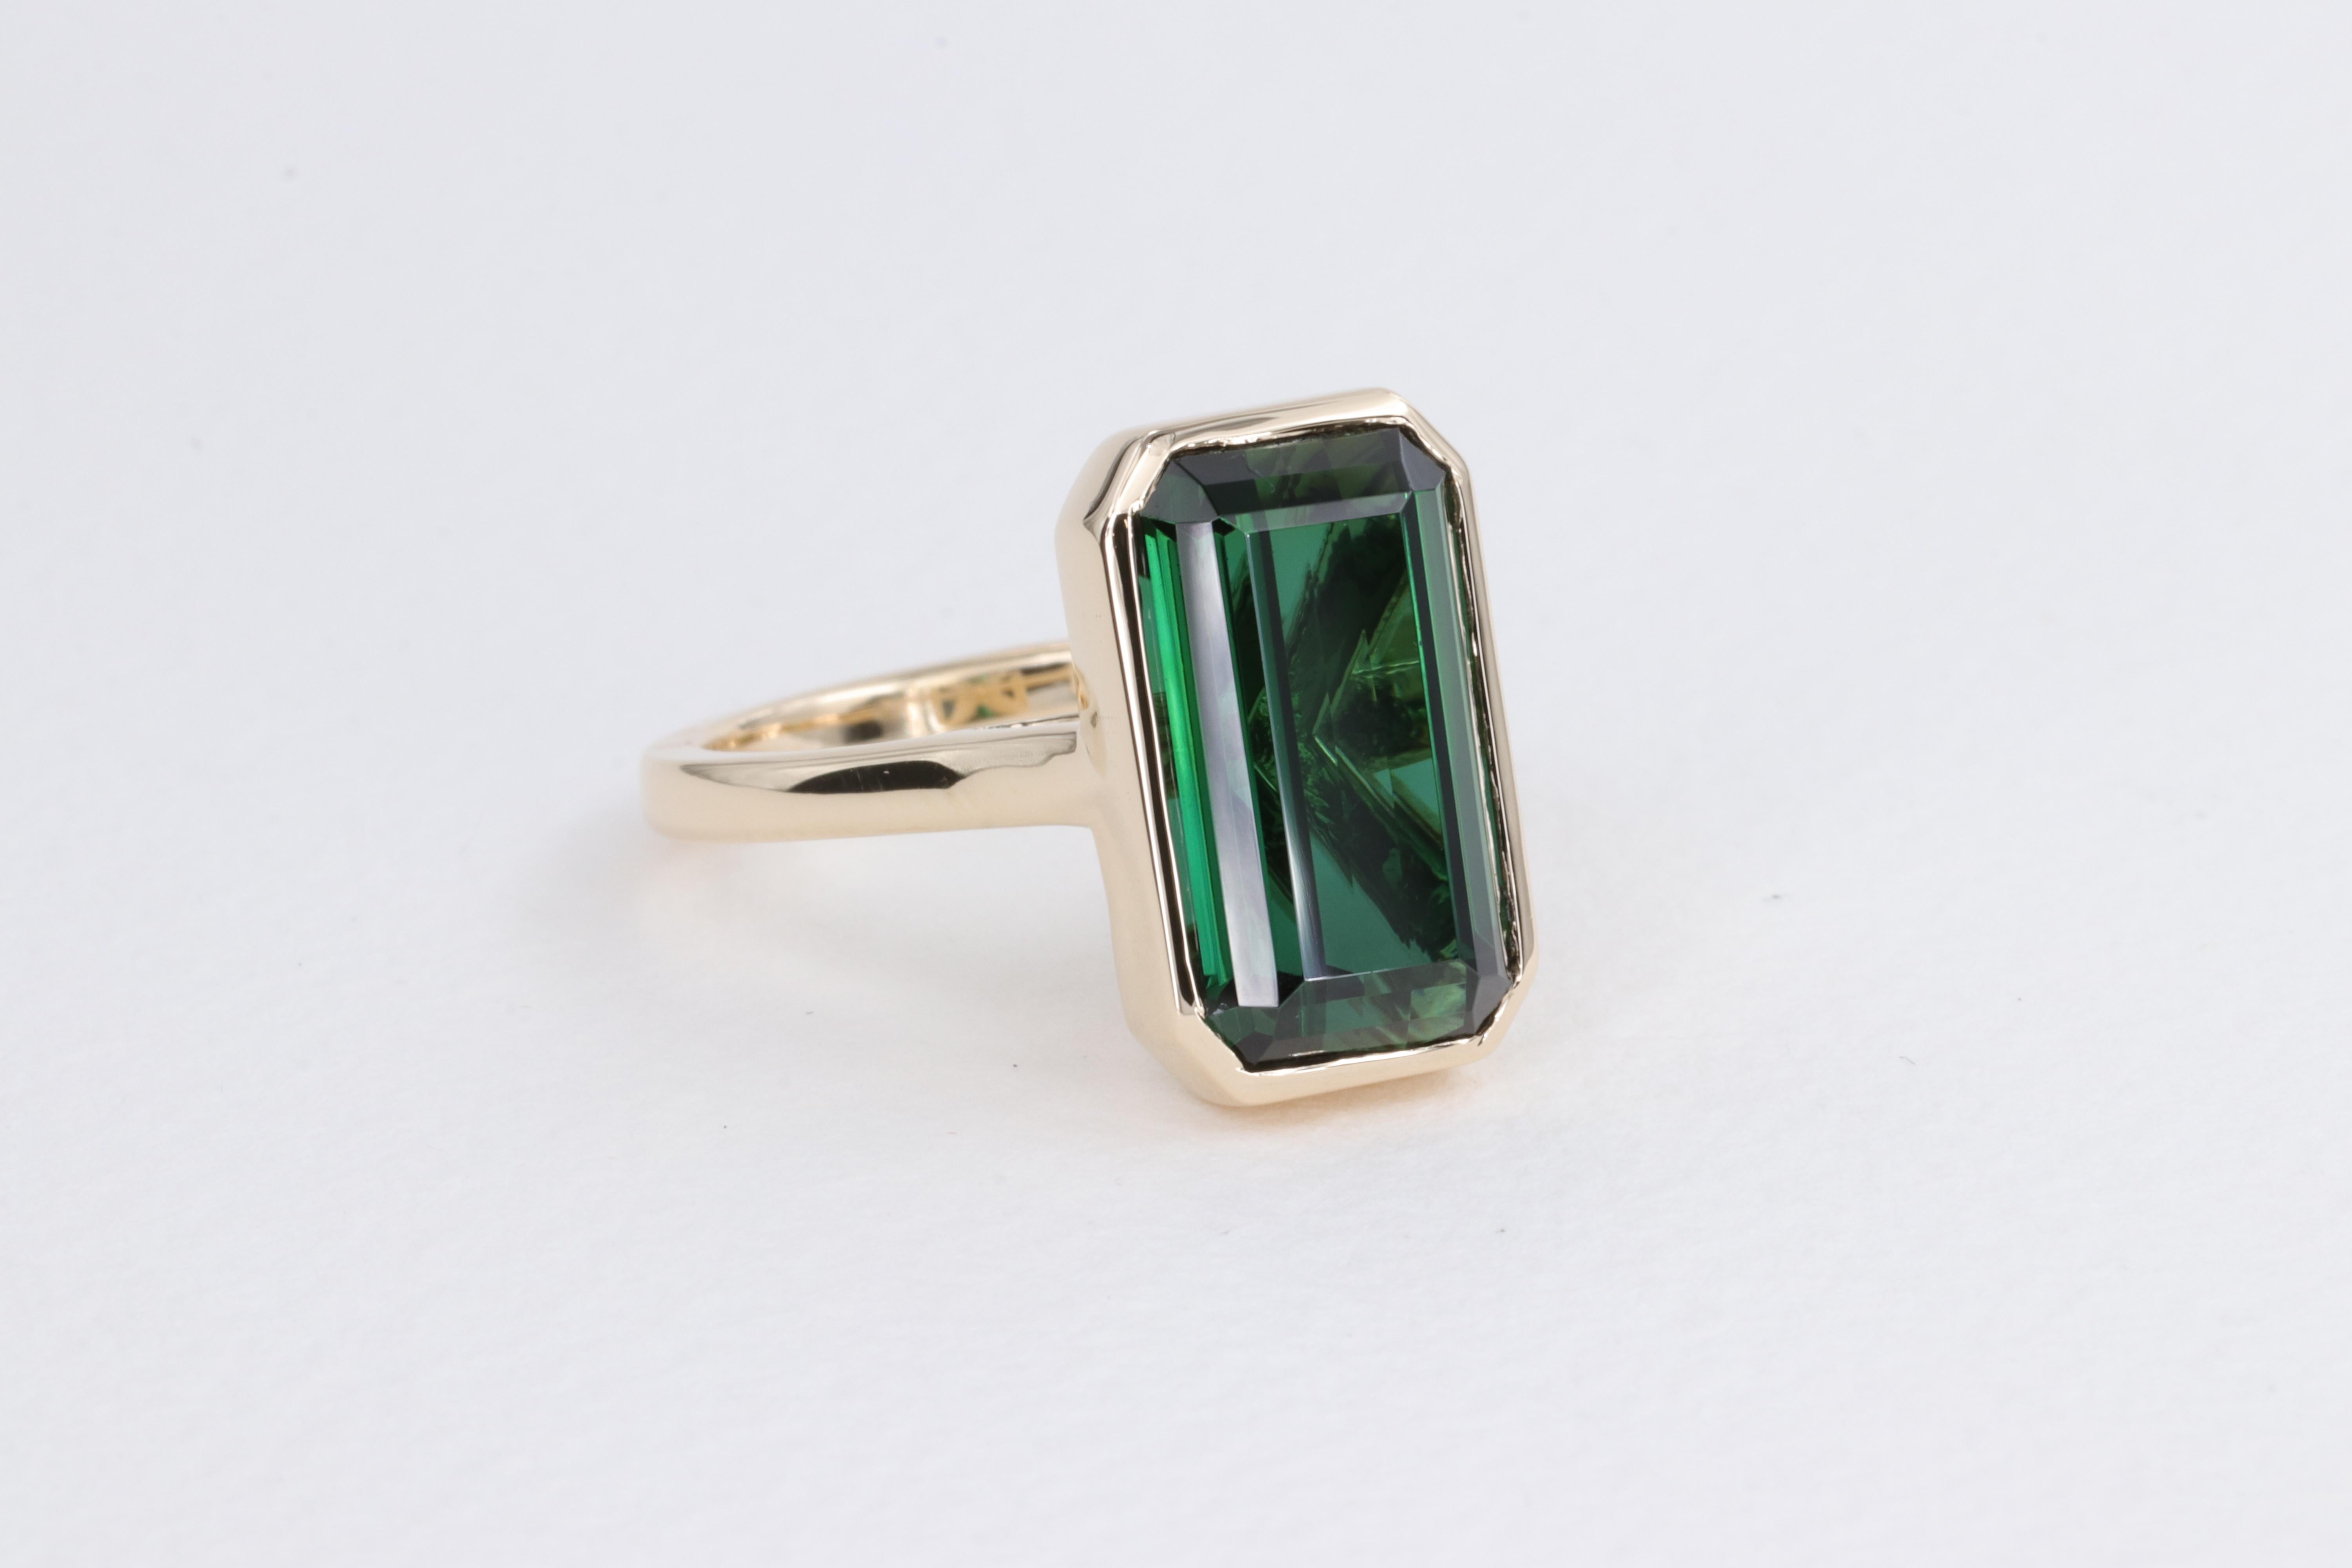 6.78 Carat Green Tourmaline Emerald Cut Bezel Set Yellow Gold Ring For Sale 1